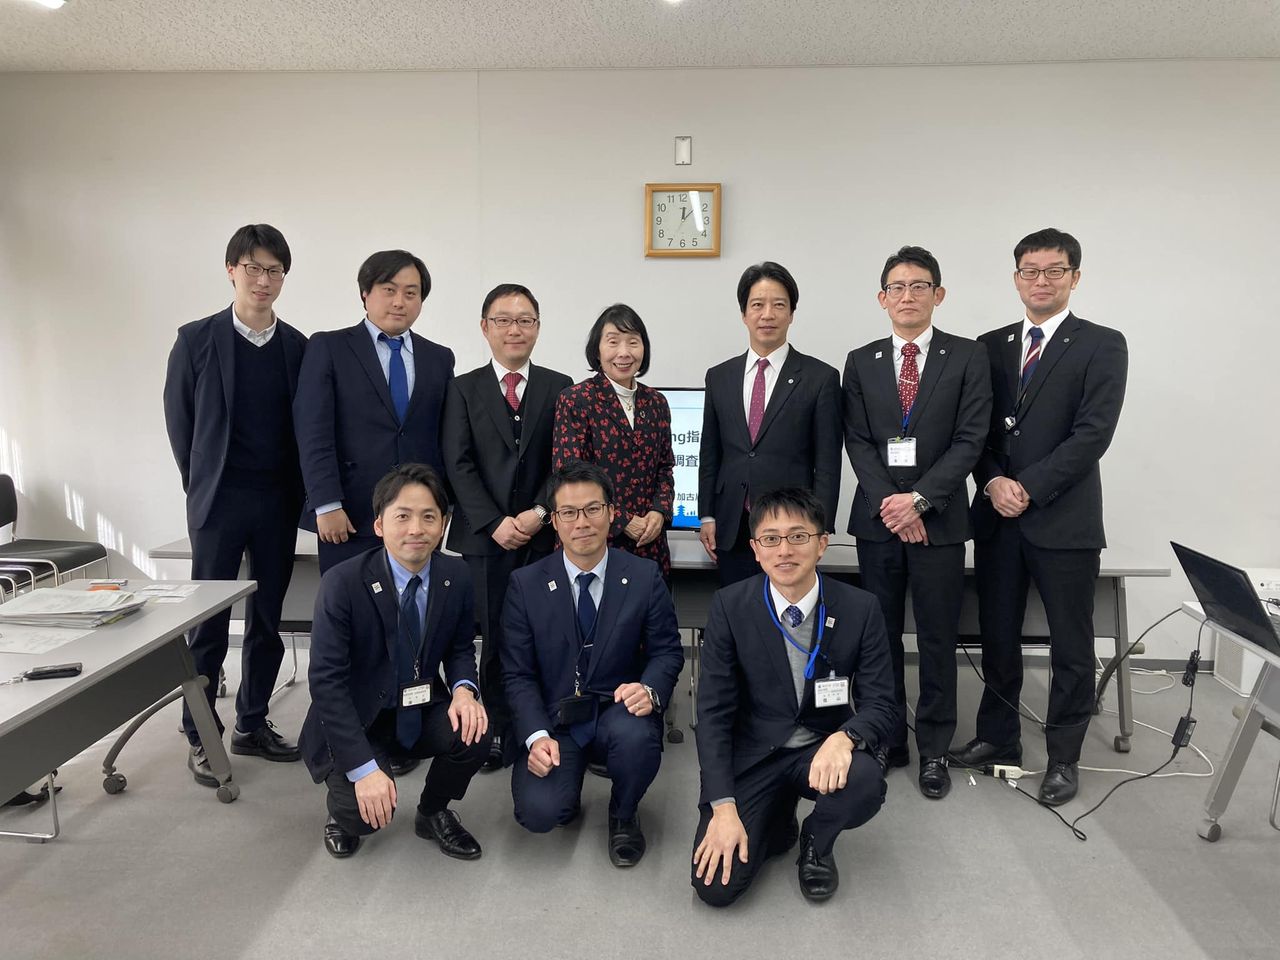 総務省統計委員会の調査研究で兵庫県加古川市役所を訪ねました